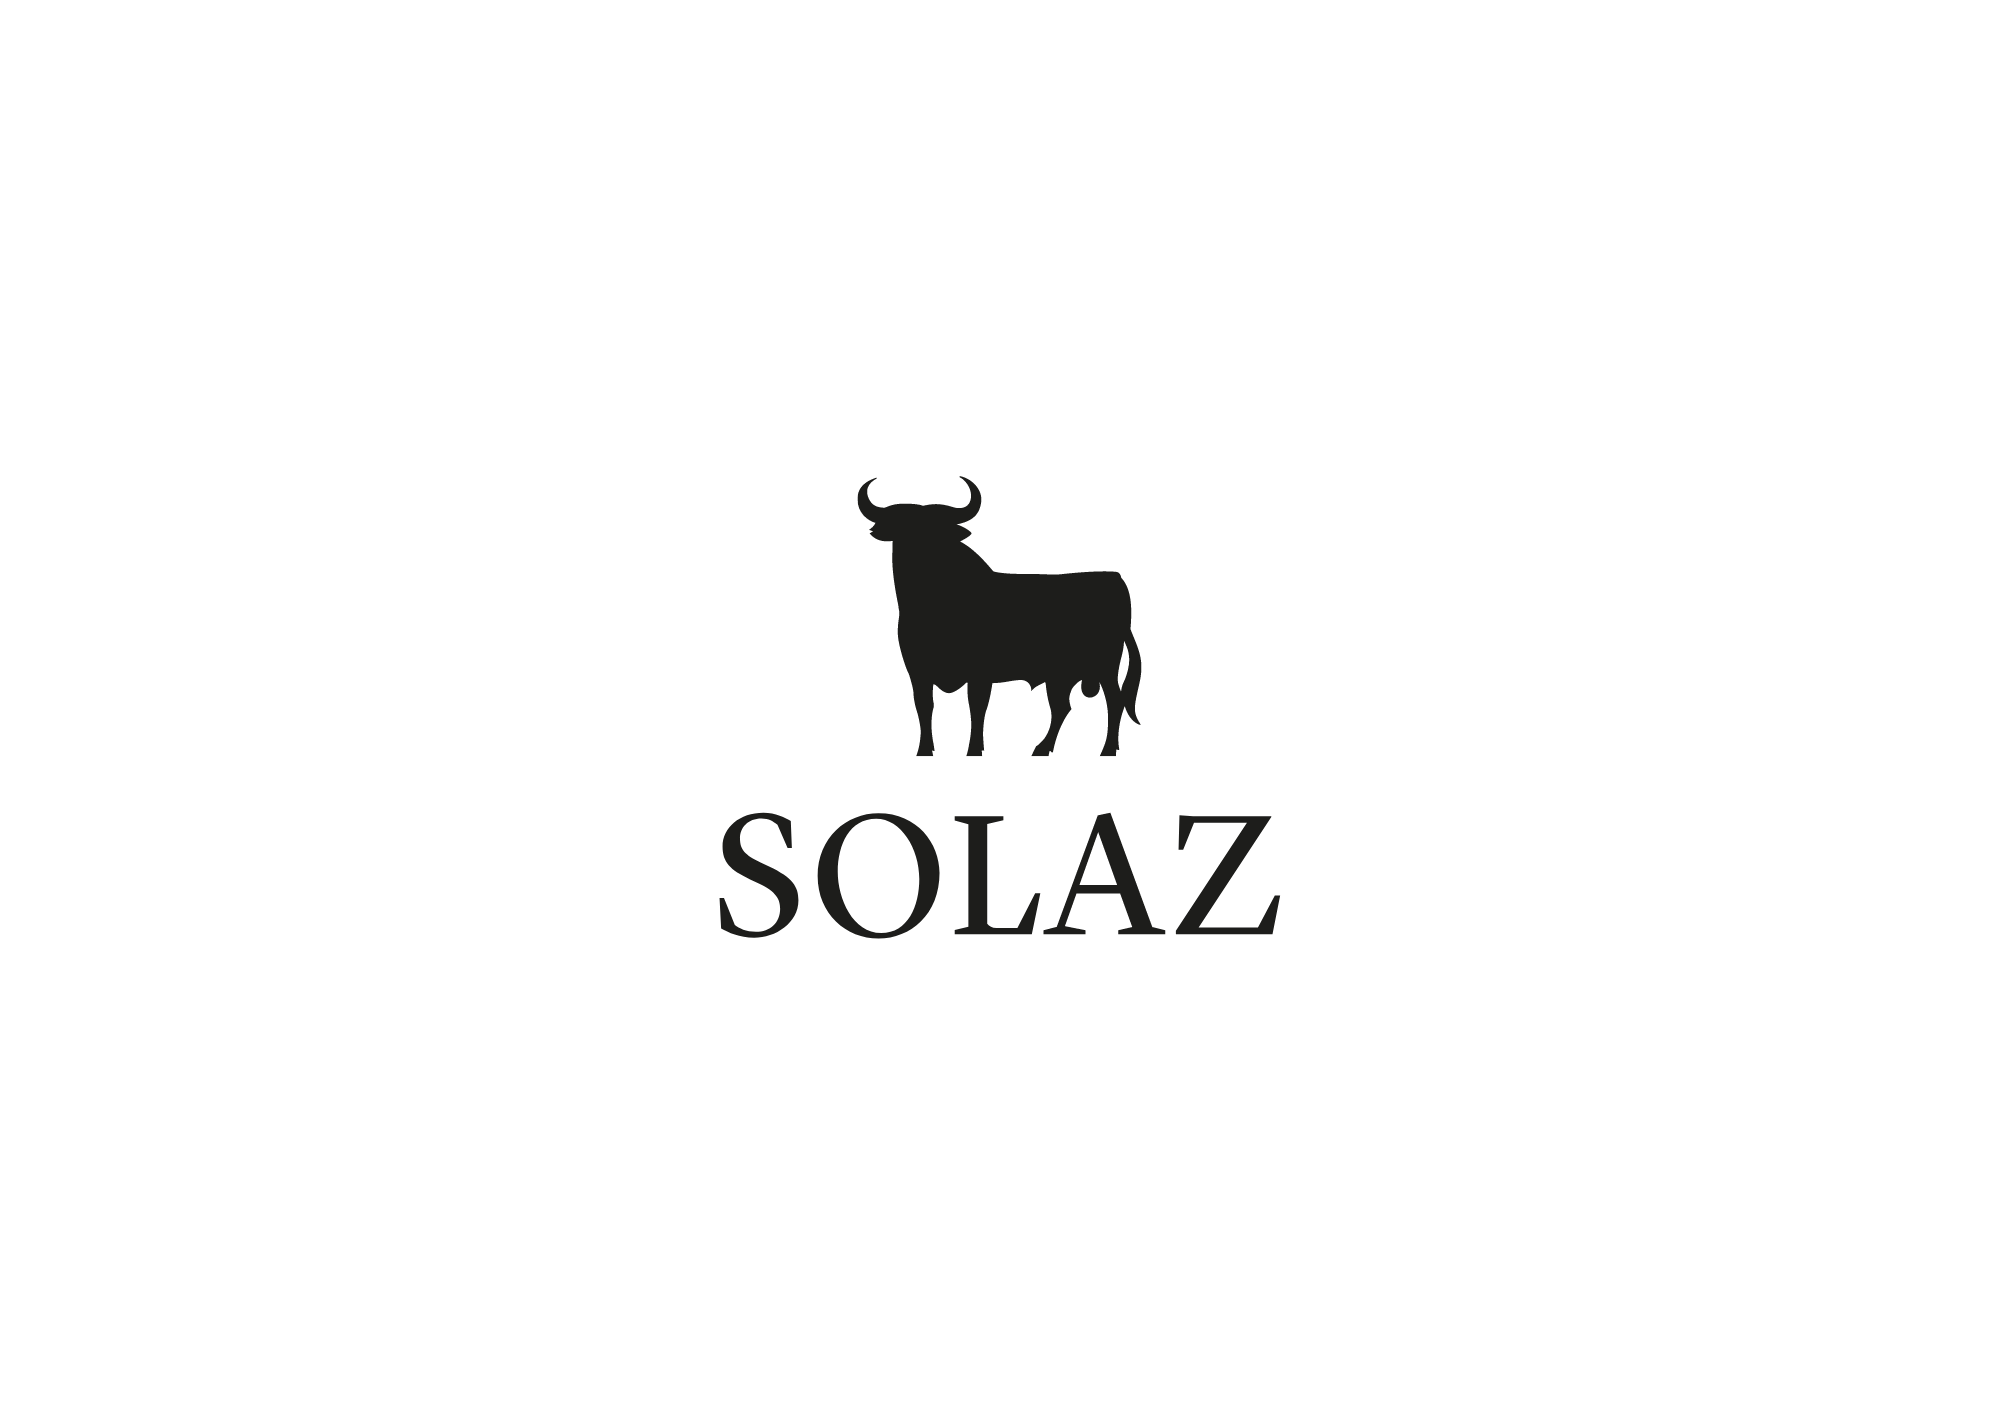 Solaz